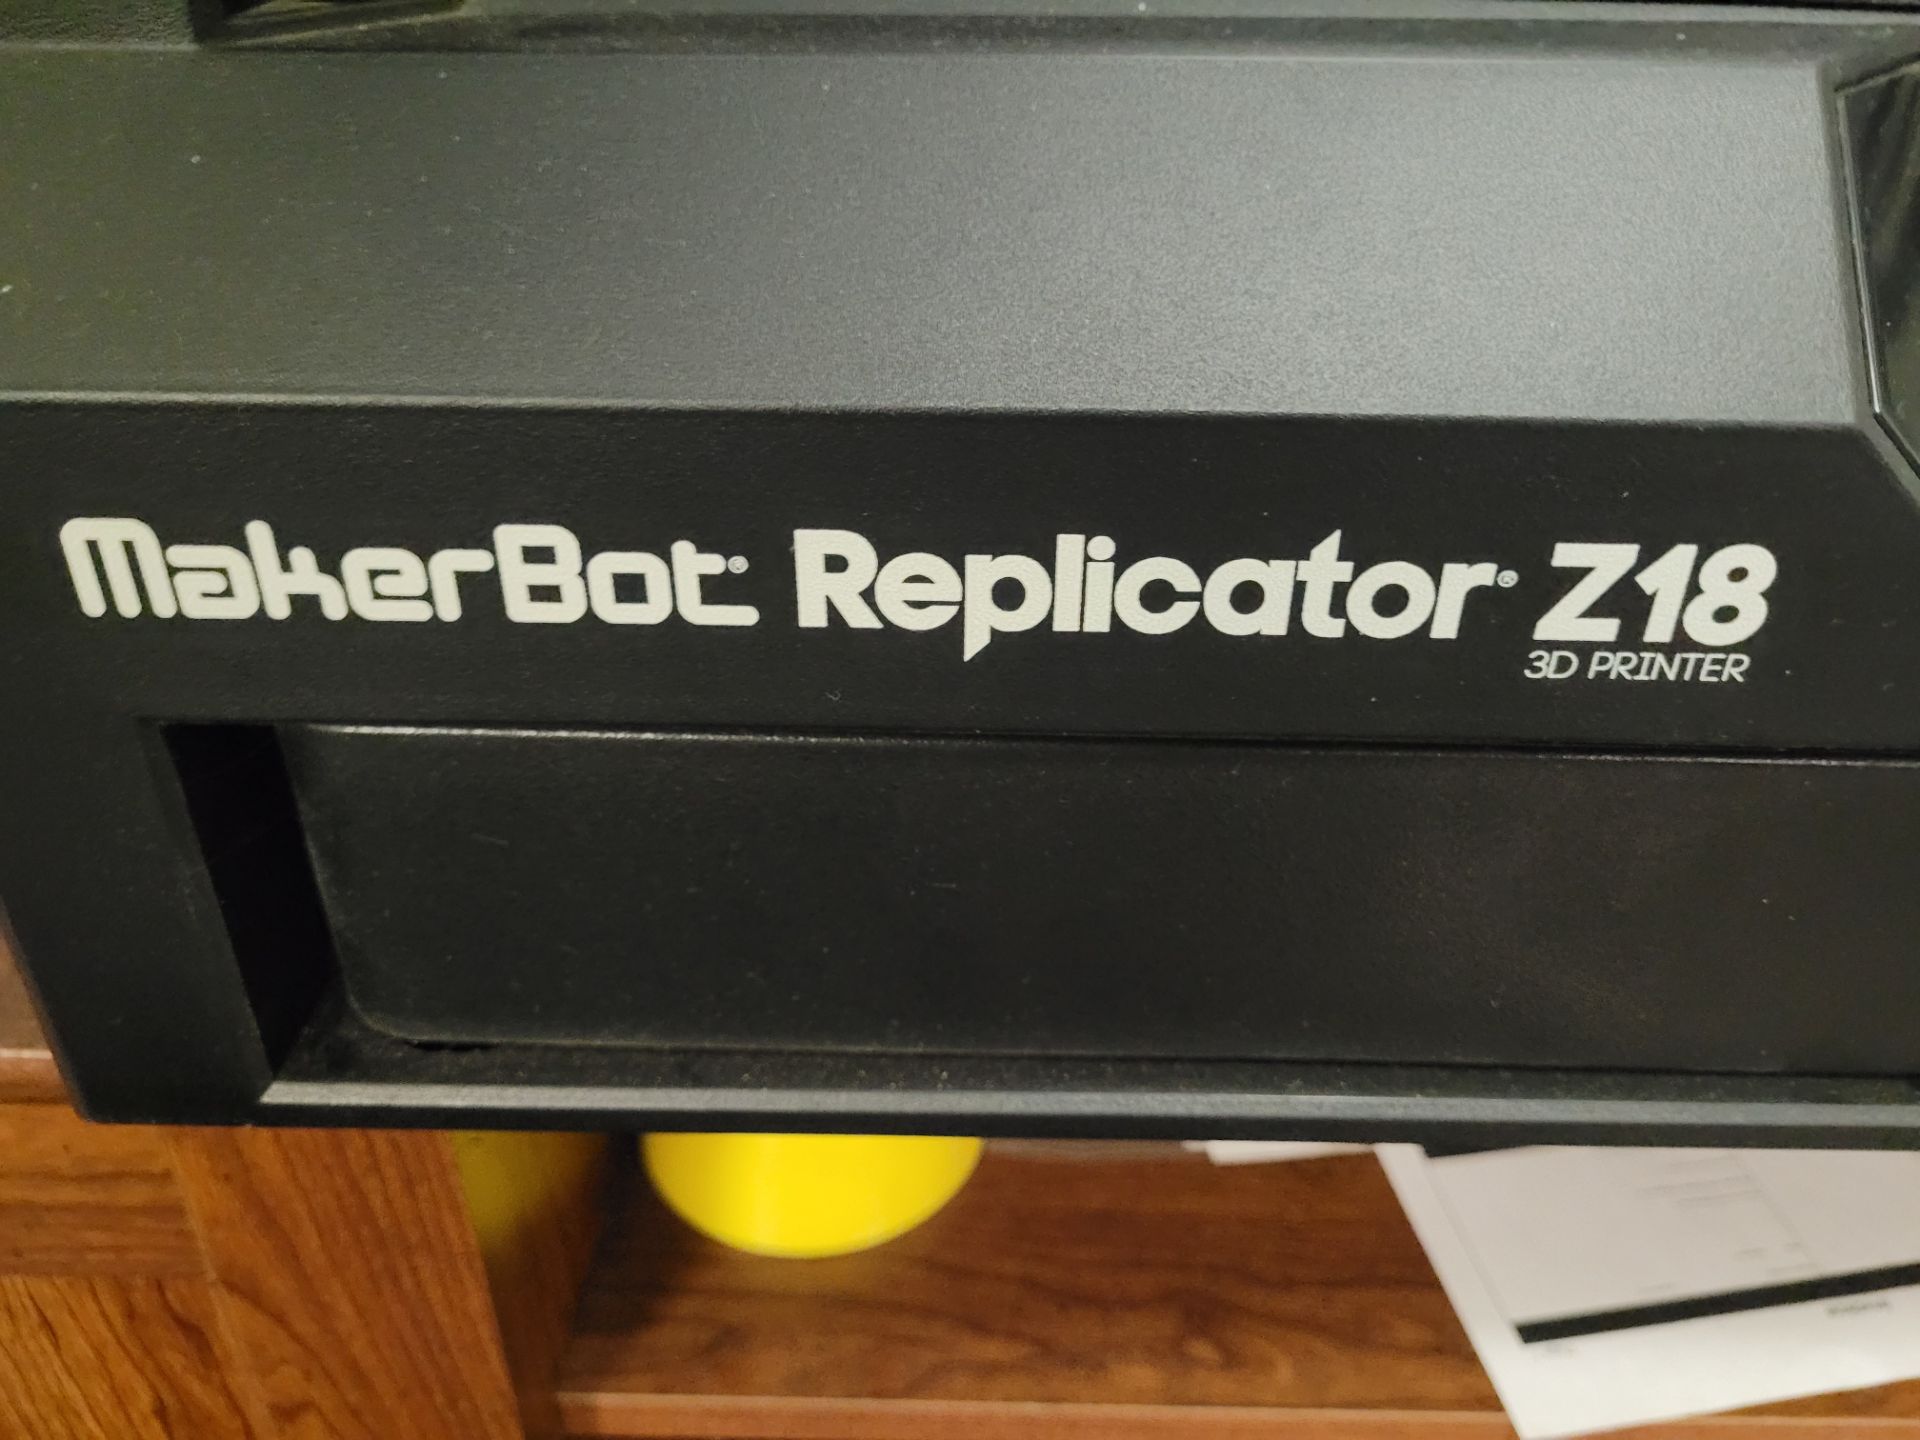 MAKERBOT REPLICATOR Z18 3D PRINTER - Image 3 of 3